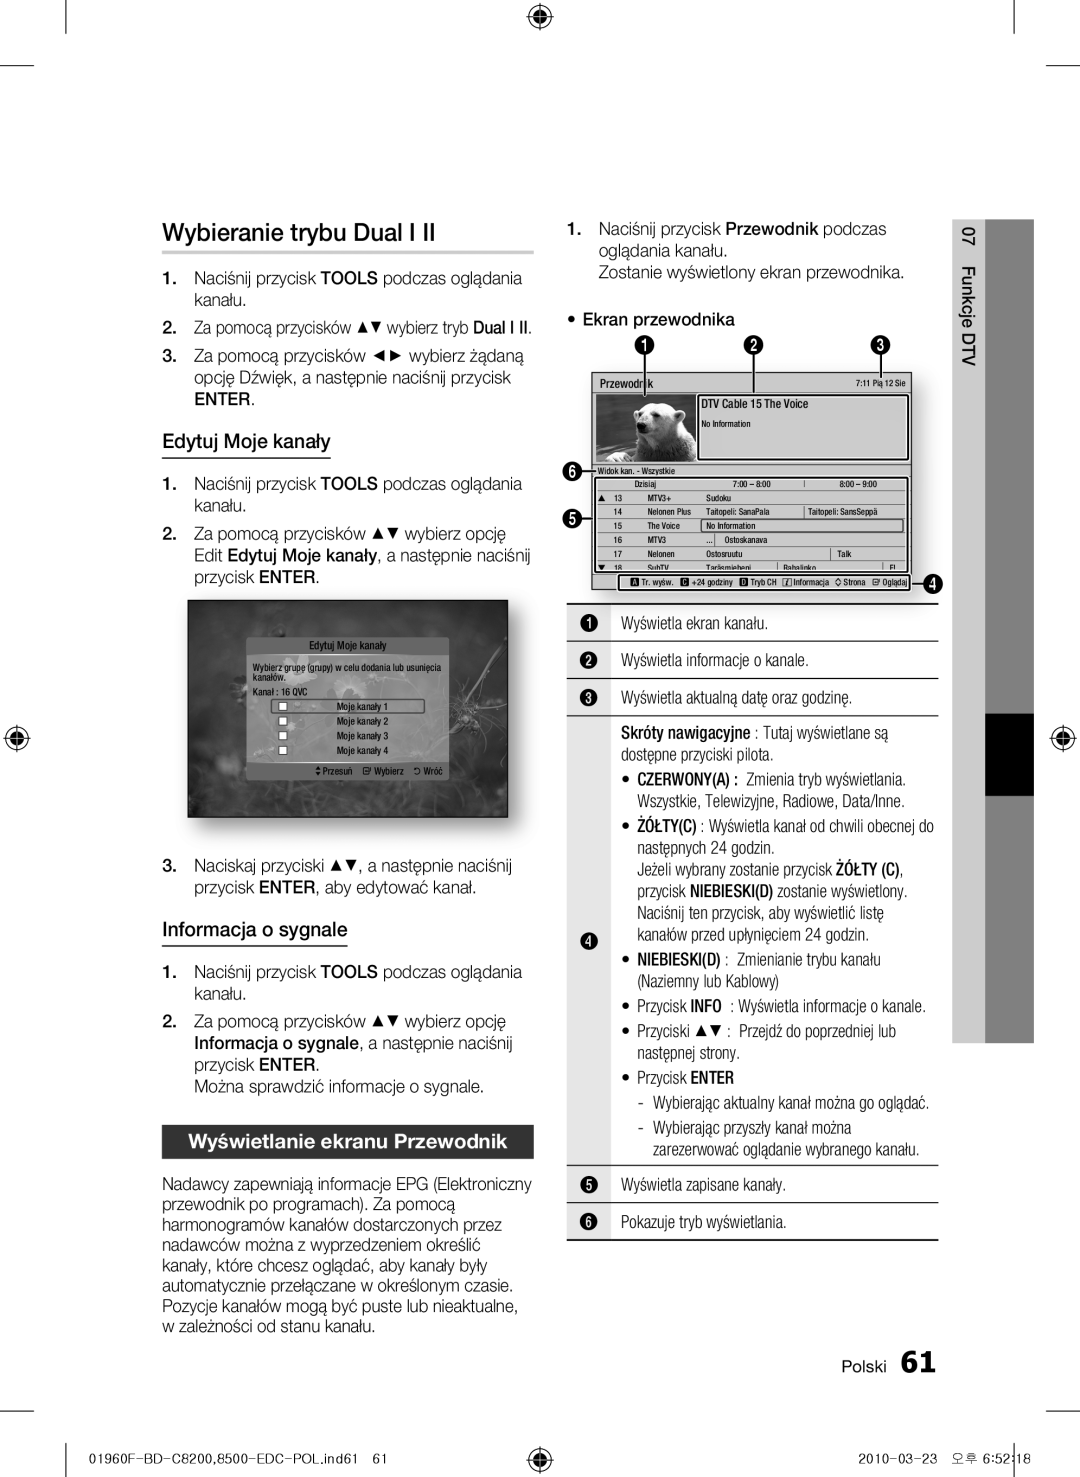 Samsung BD-C8200/EDC Wybieranie trybu Dual I, Edytuj Moje kanały, Informacja o sygnale, Wyświetlanie ekranu Przewodnik 